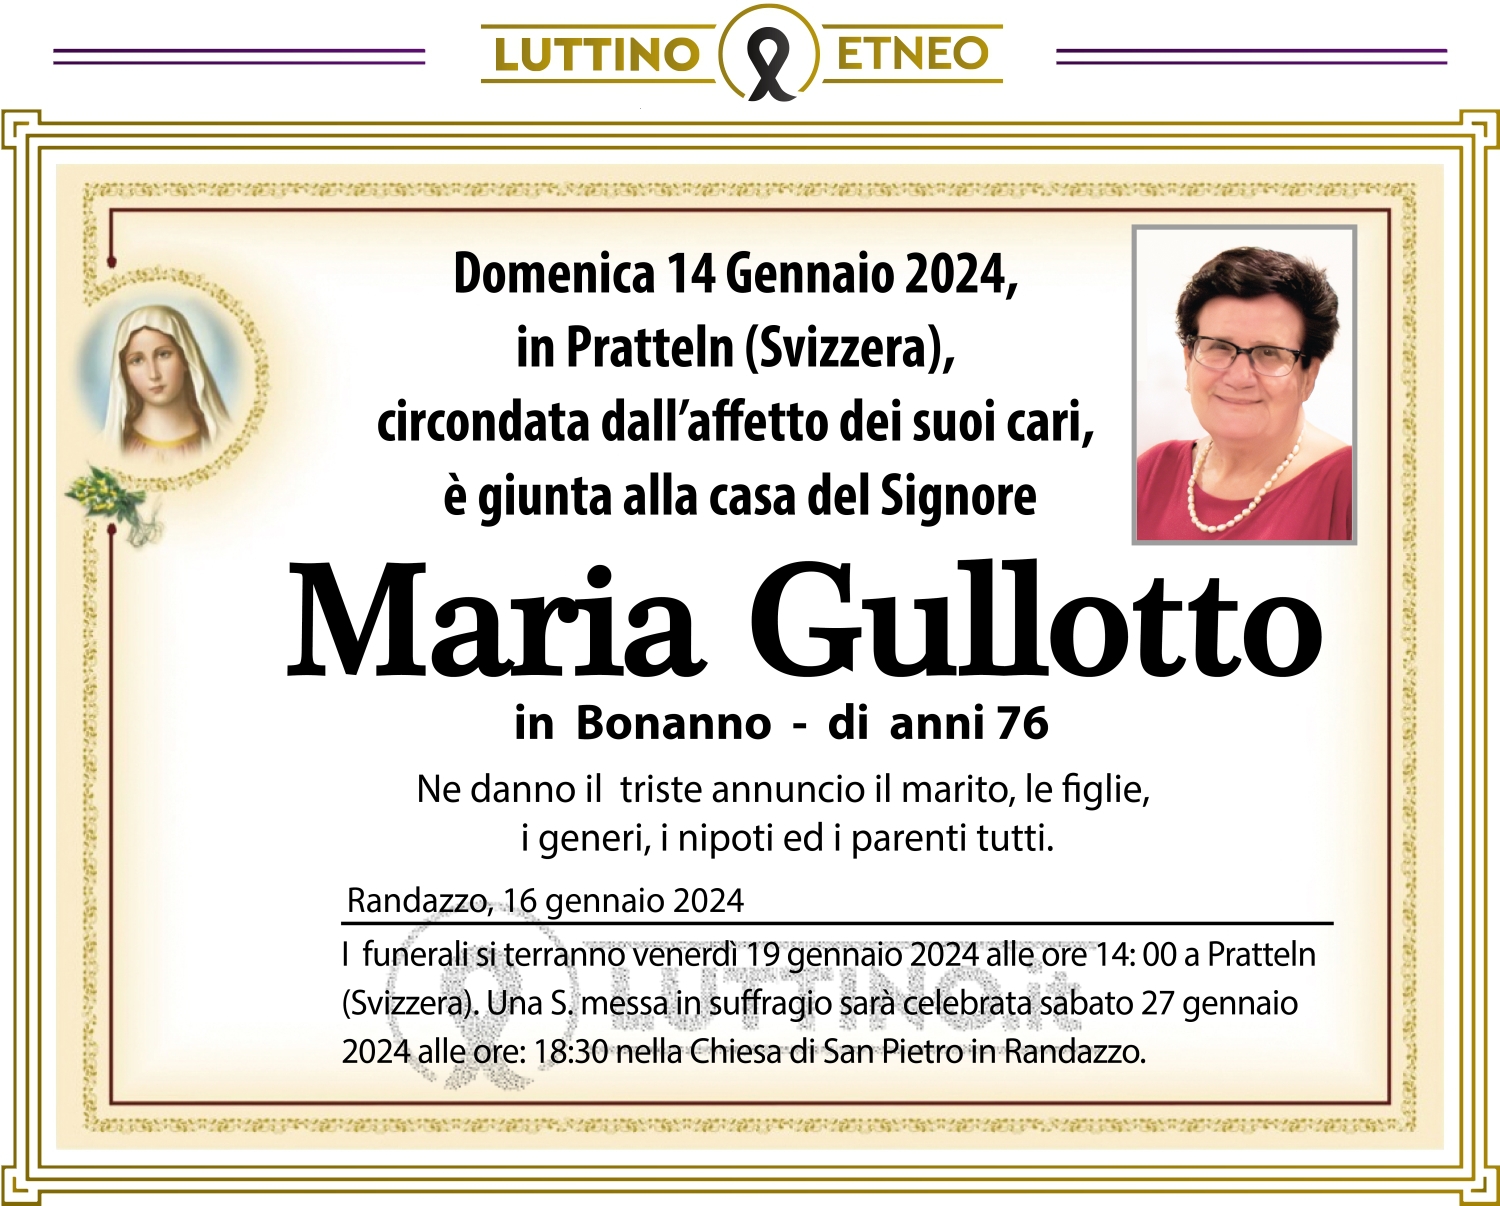 Maria Gullotto